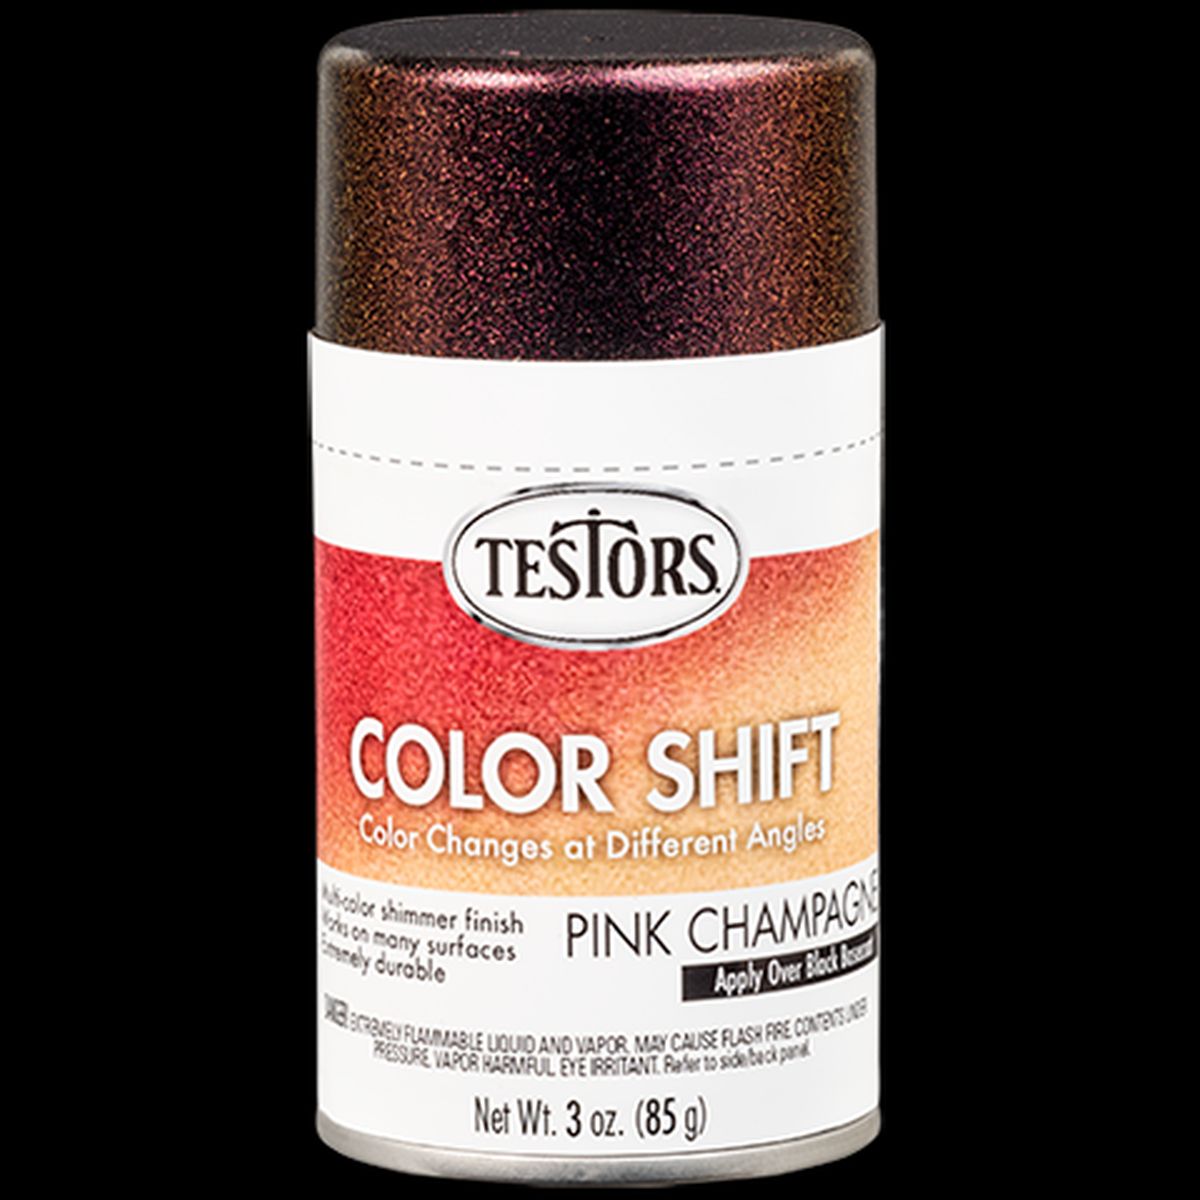 Testors Color Shift 3-oz. Spray Paint